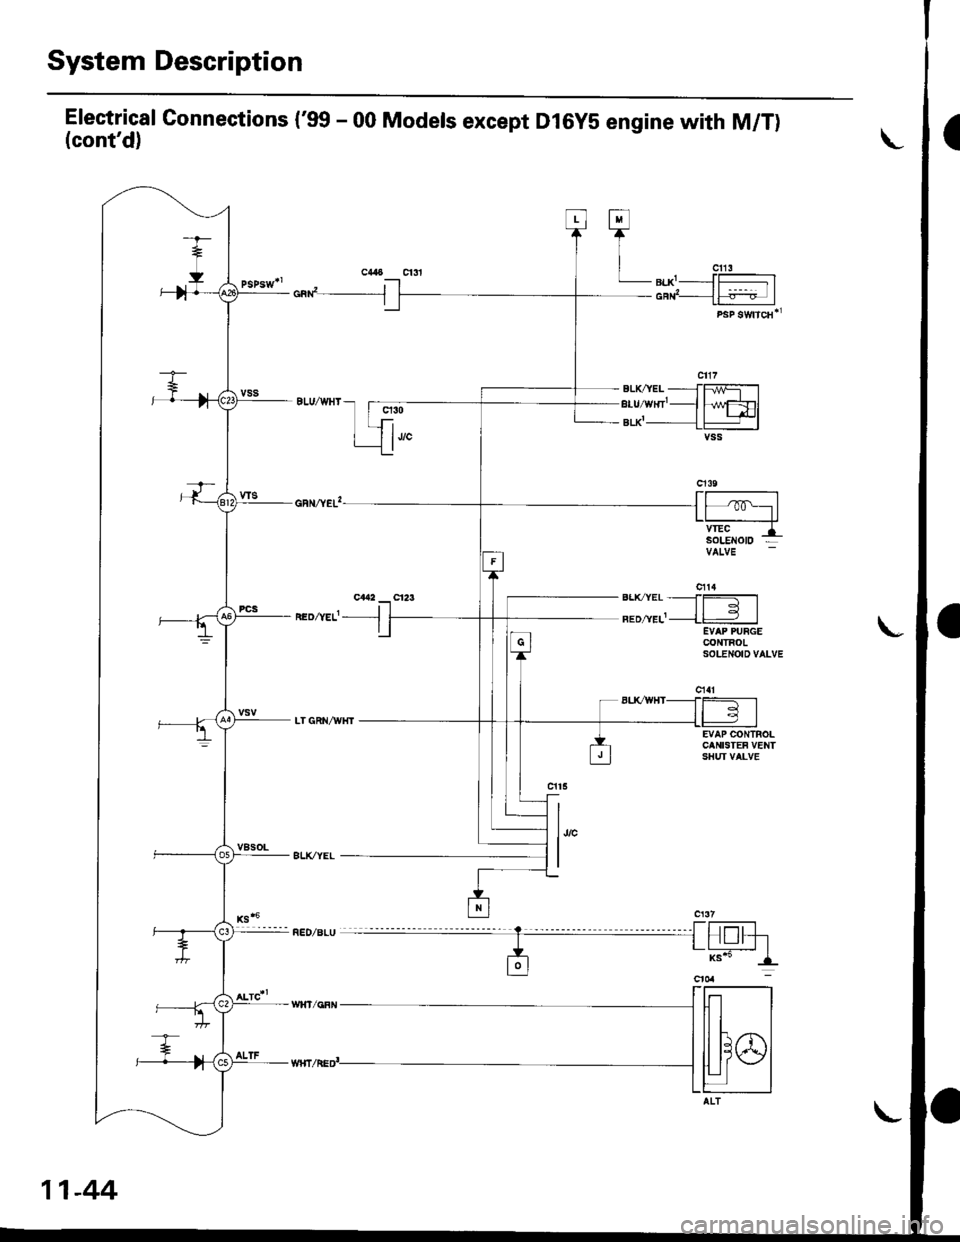 HONDA CIVIC 1998 6.G Owners Guide System Description
Electrical Gonnections (99 - 00 Models except Dl6yS engine with M/T)(contd)
cad__J
neozvef- -l
q30
1""
h/wFDlt+l-lvss
EVAP CONTROLCANISTEF VENTSHUI VALVE
l,,"
I
Fl
TI
| "u,LB|.X-